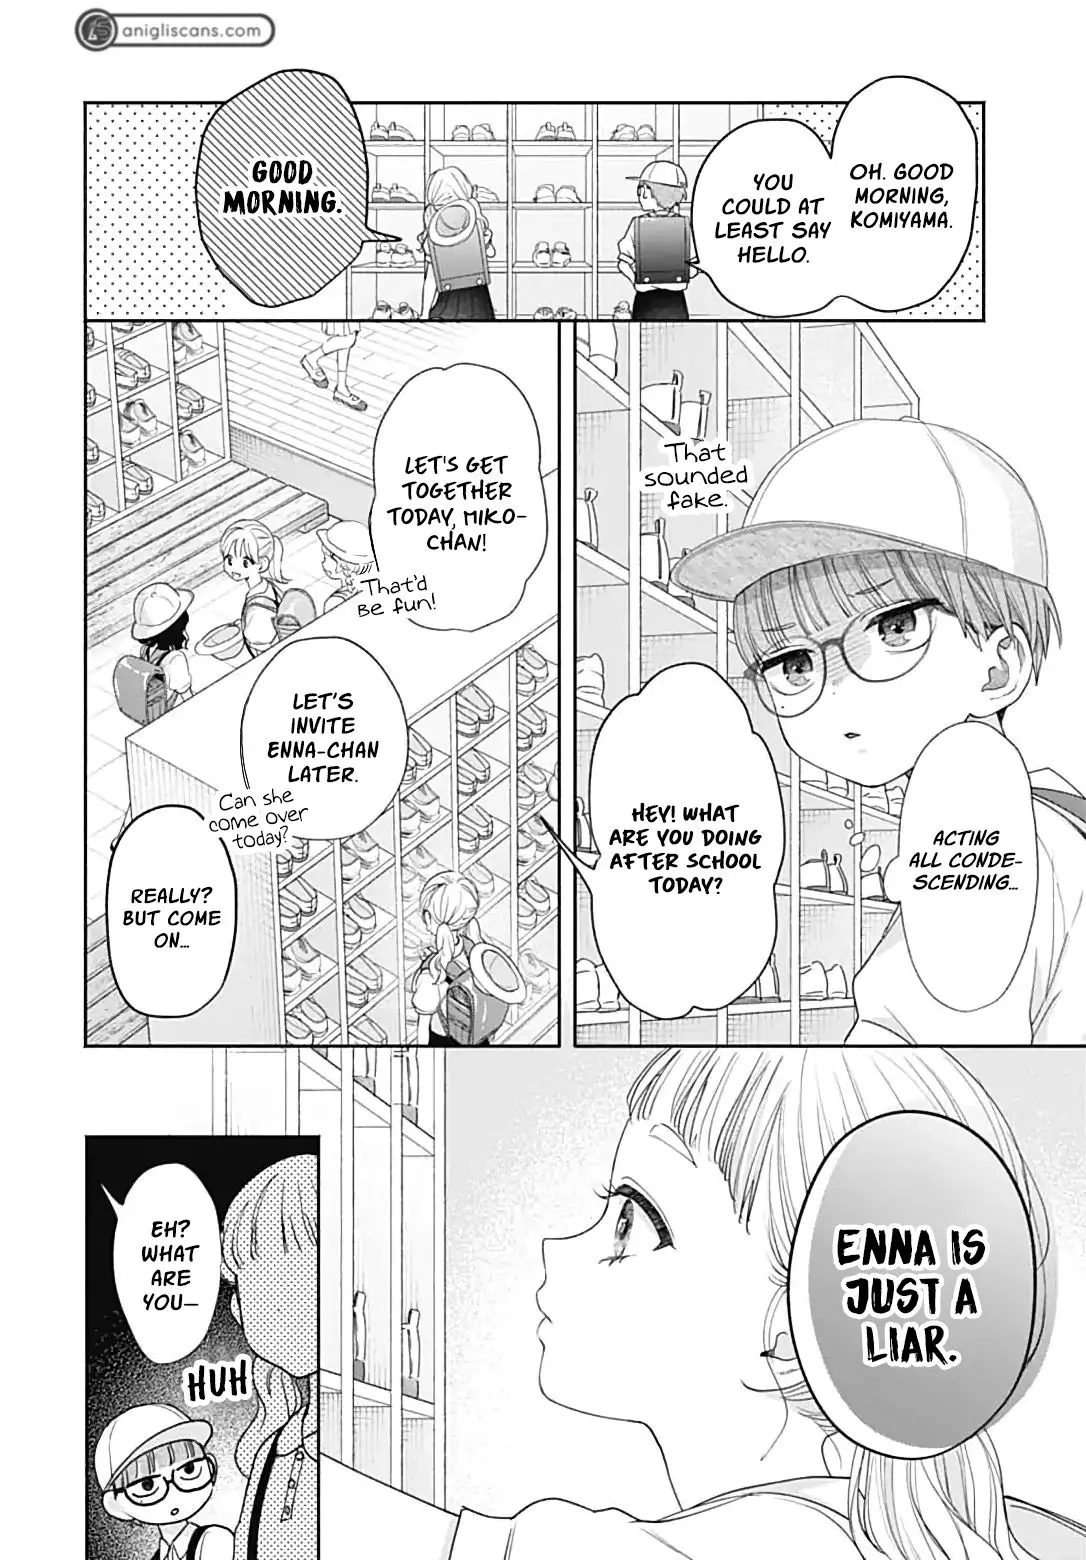 I Hate Komiyama - 1 page 9-9f7f50ec